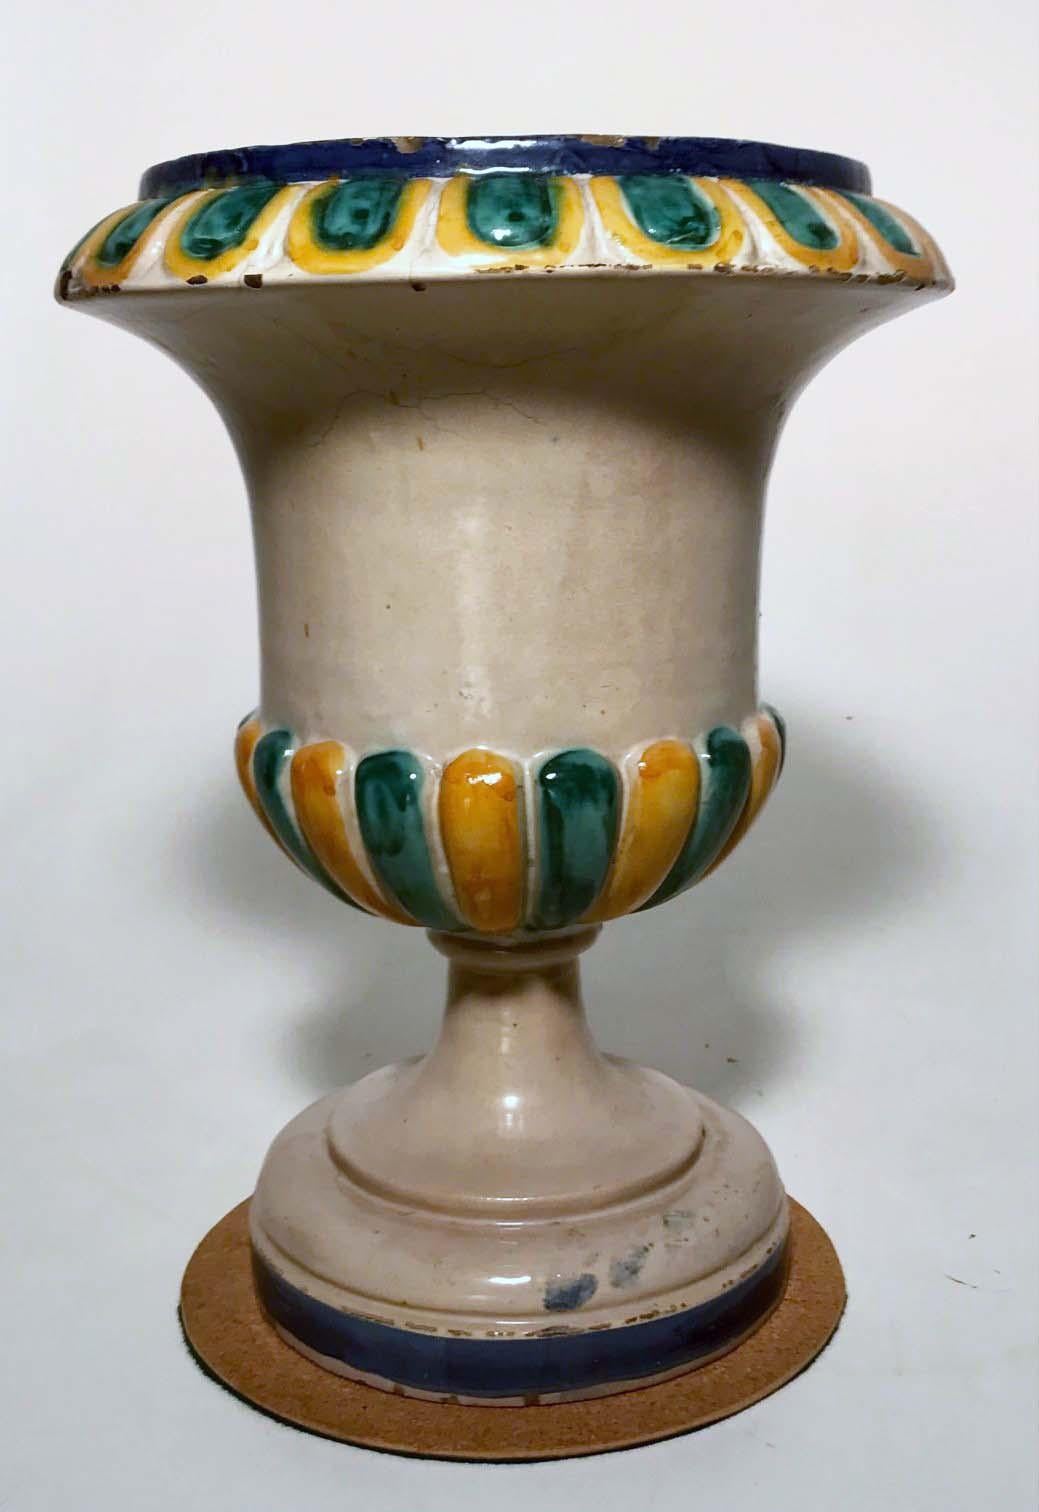 Diese Majolika-Urne ist aus Campana  Form, halb geriffelt in Senf und  smaragdgrün mit  geformter passender Rand. Es war für einen Blumentopf  ursprünglich, könnte aber auch einen stilvollen Weinkübel für ein Essen im Freien darstellen.
Dieses trägt